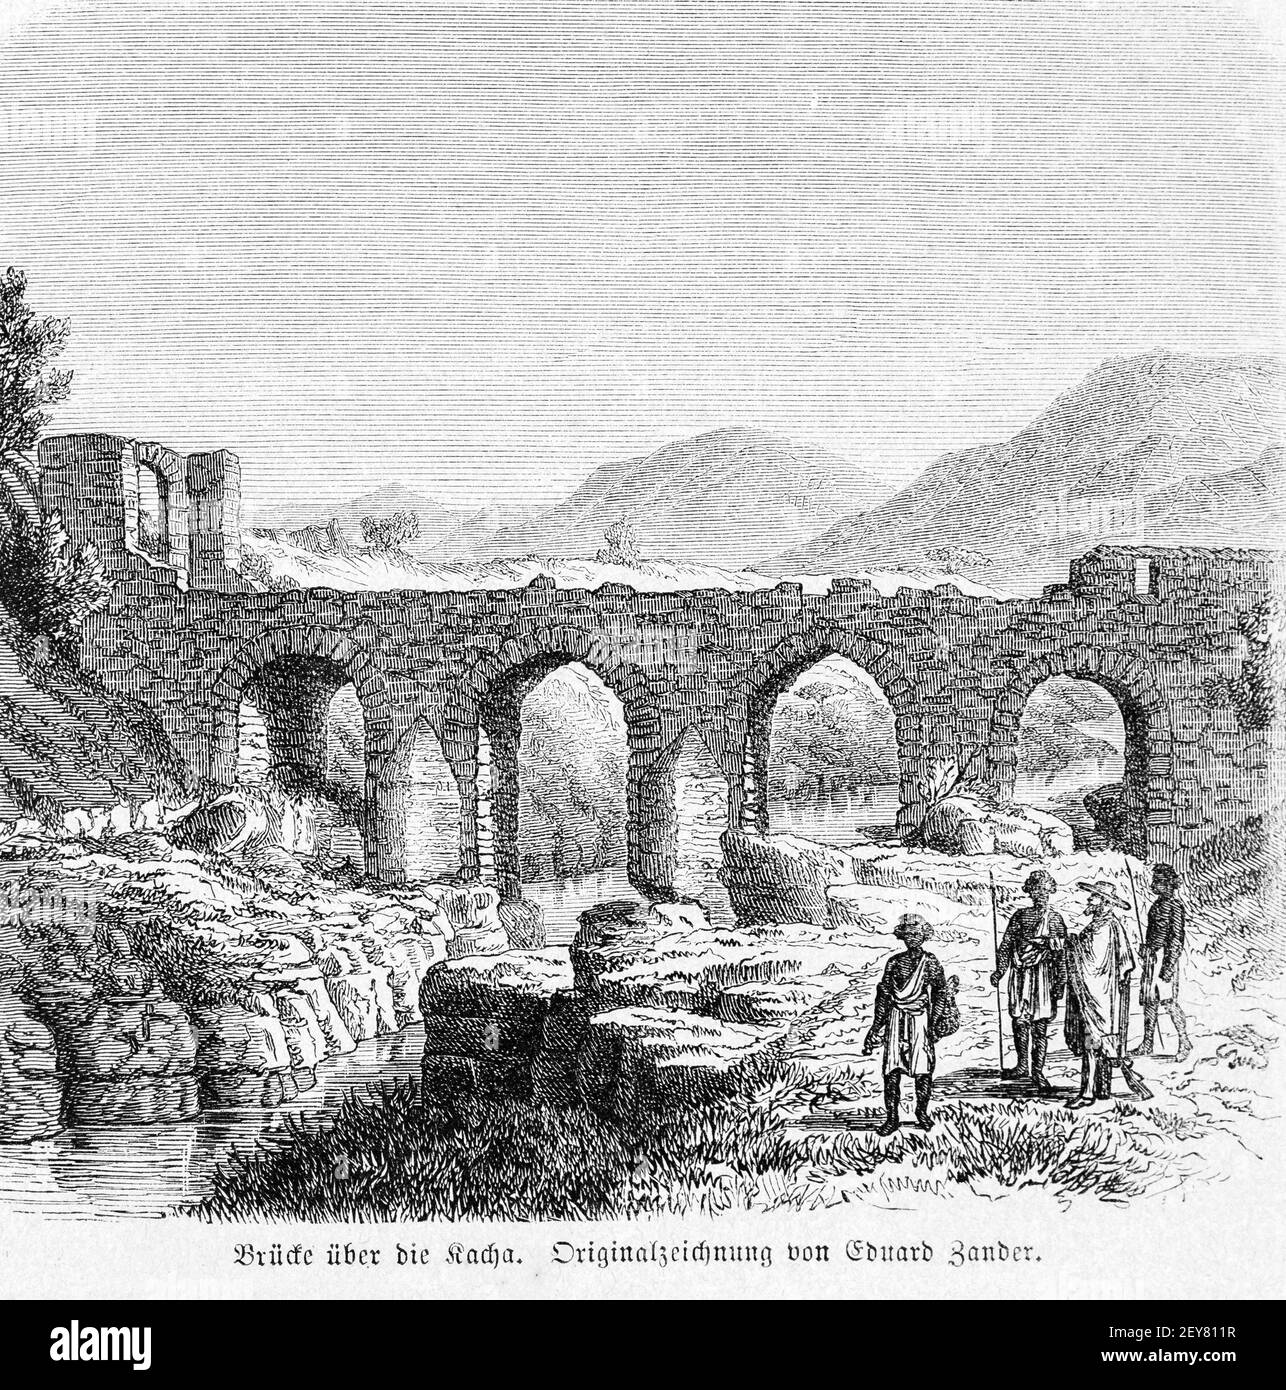 Steinbrücke über einen Fluss bei Gonder, Dr. Richard Andree, Abessina, Äthiopien, Ostafrika, Abessinien, Land und Volk, Leipzig 1869 Stockfoto